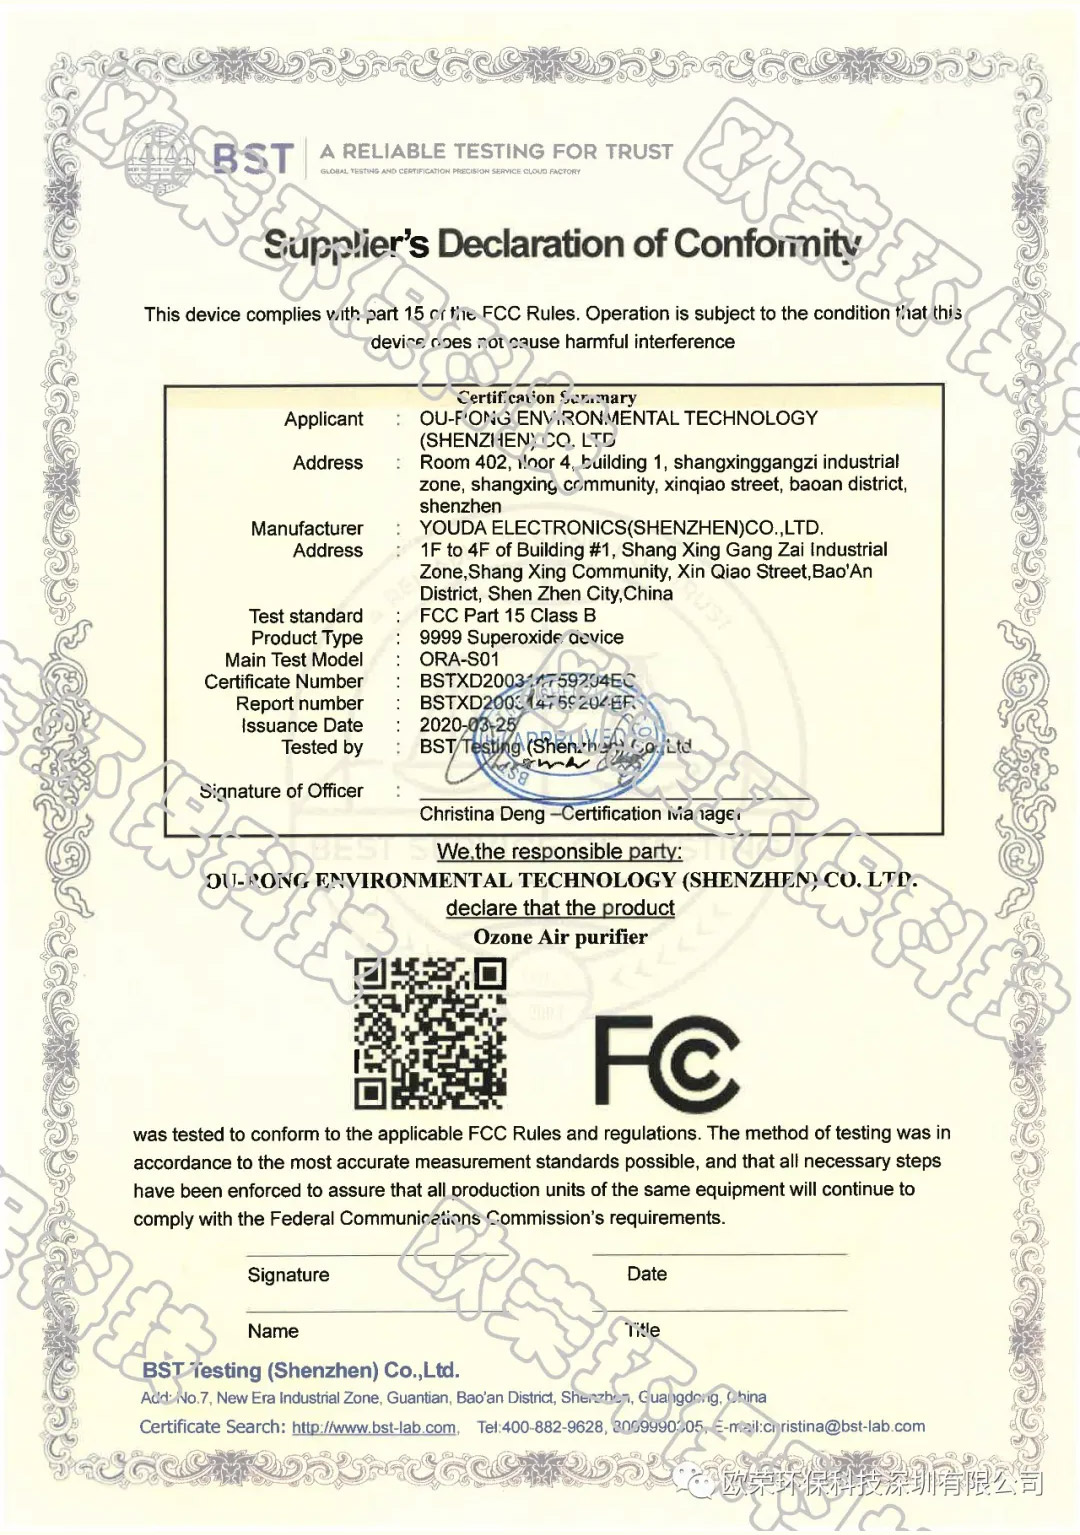 歐榮活氧發明專利-歐榮活氧發明專利-美國FCC安全認證